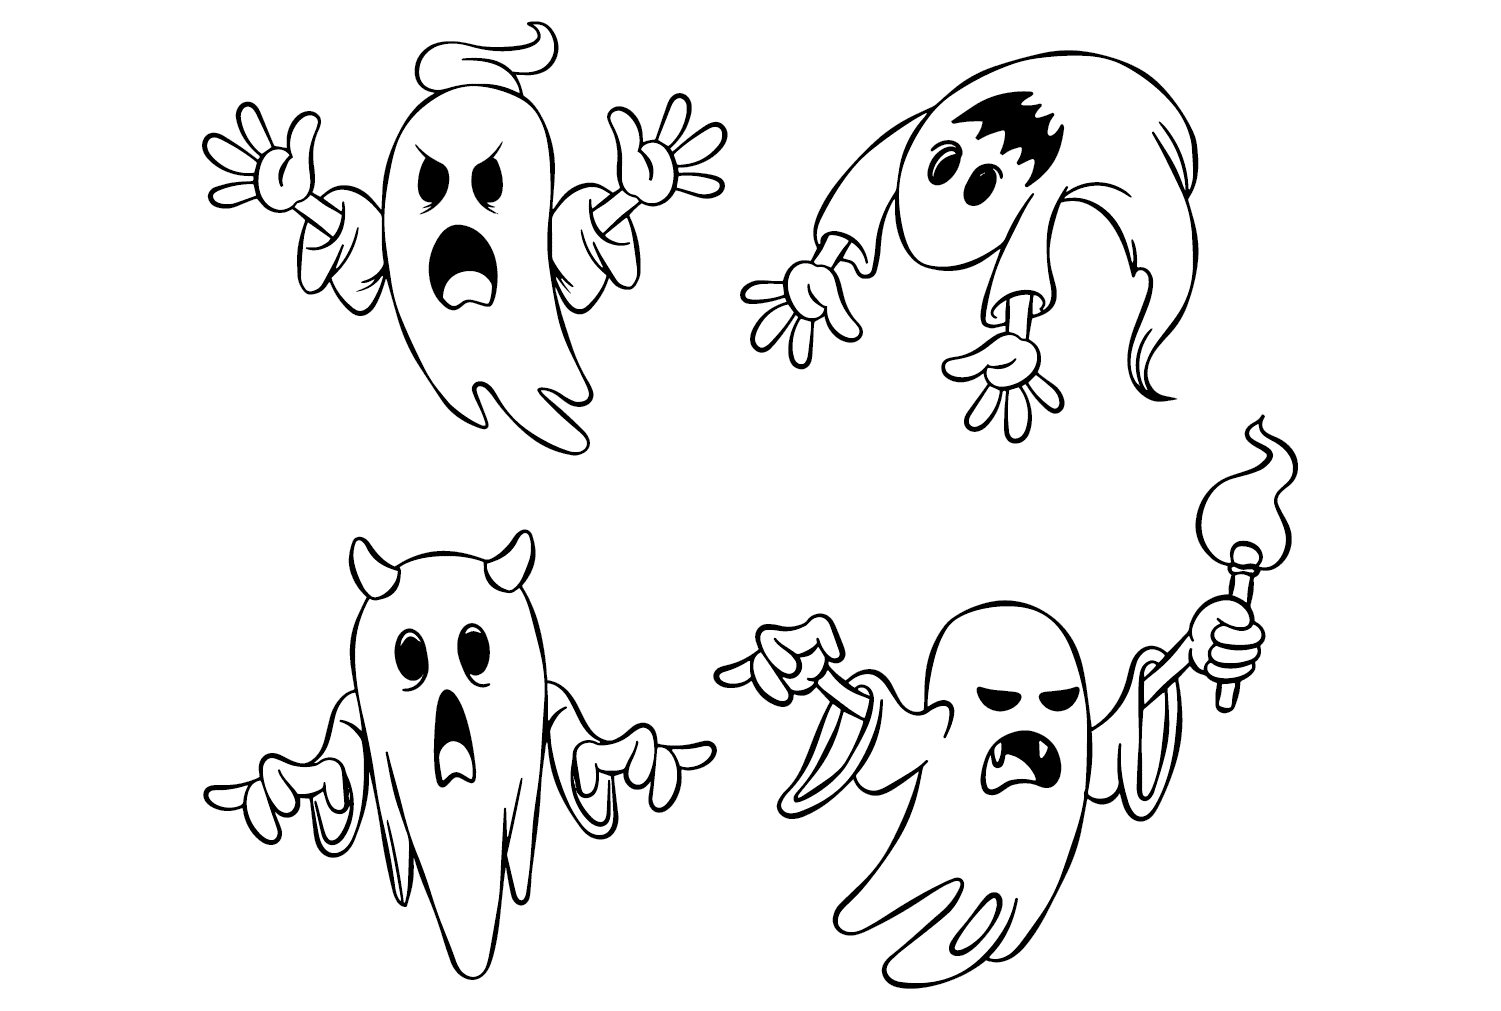 Páginas para colorir do Ghost para imprimir no Ghost